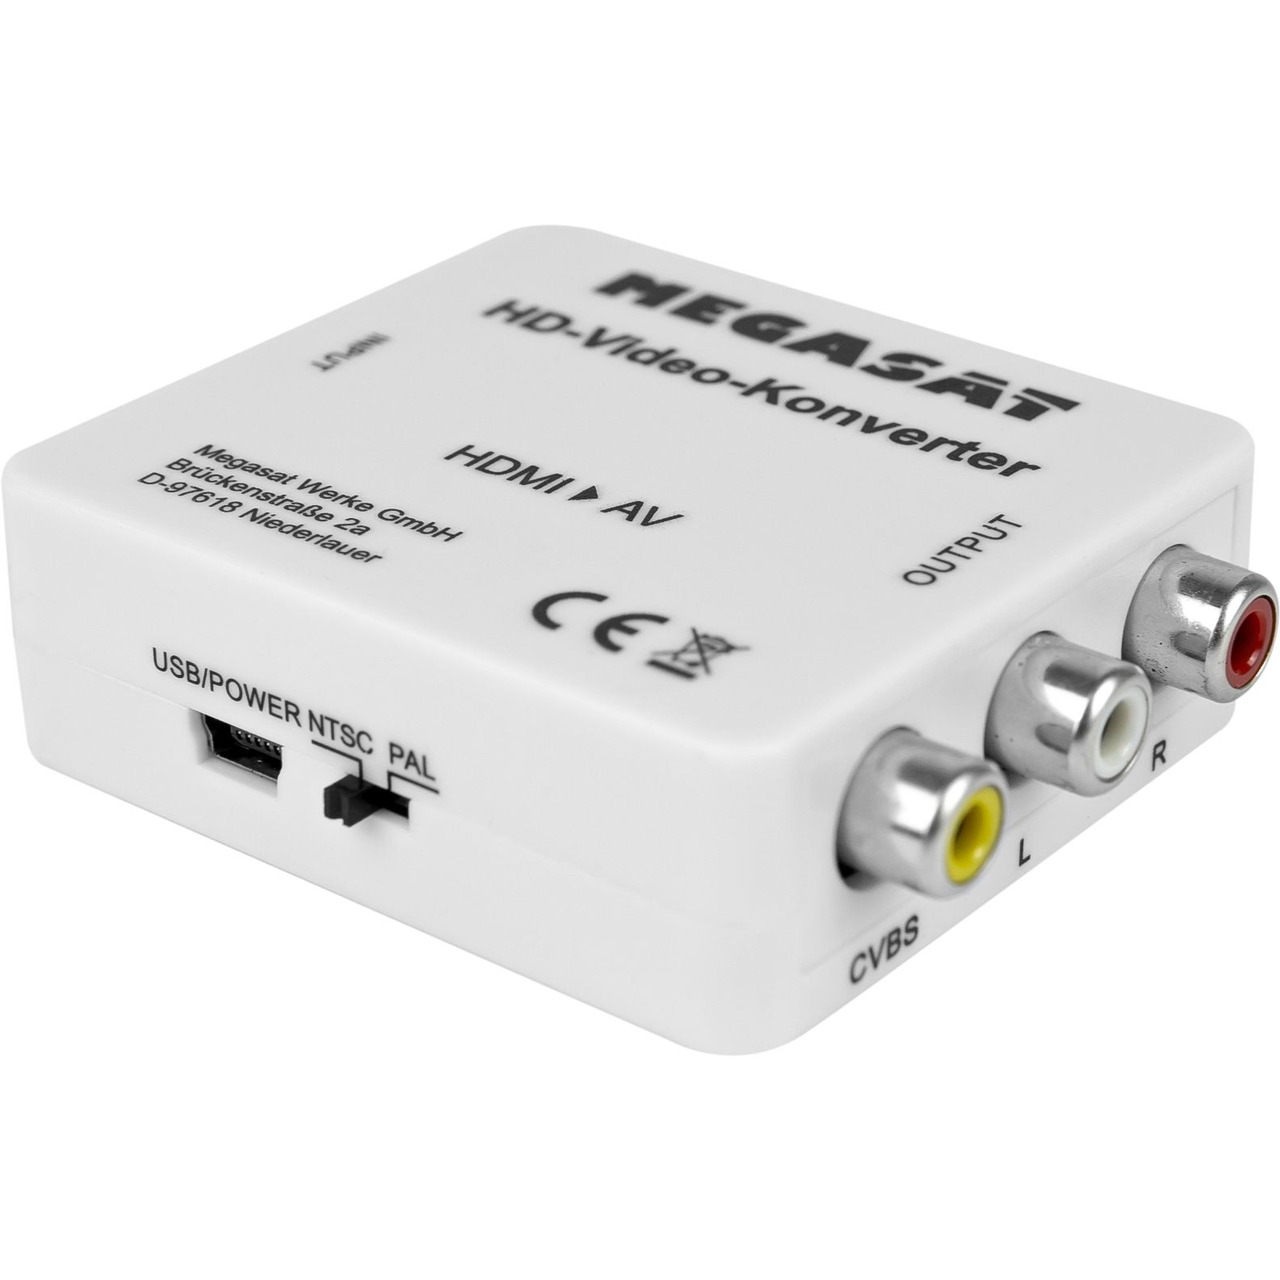 Megasat HDMI-zu-AV-Konverter- Plug und Play- HDMI 1-3- HDMI-AV-Adapter- PAL-NTSC